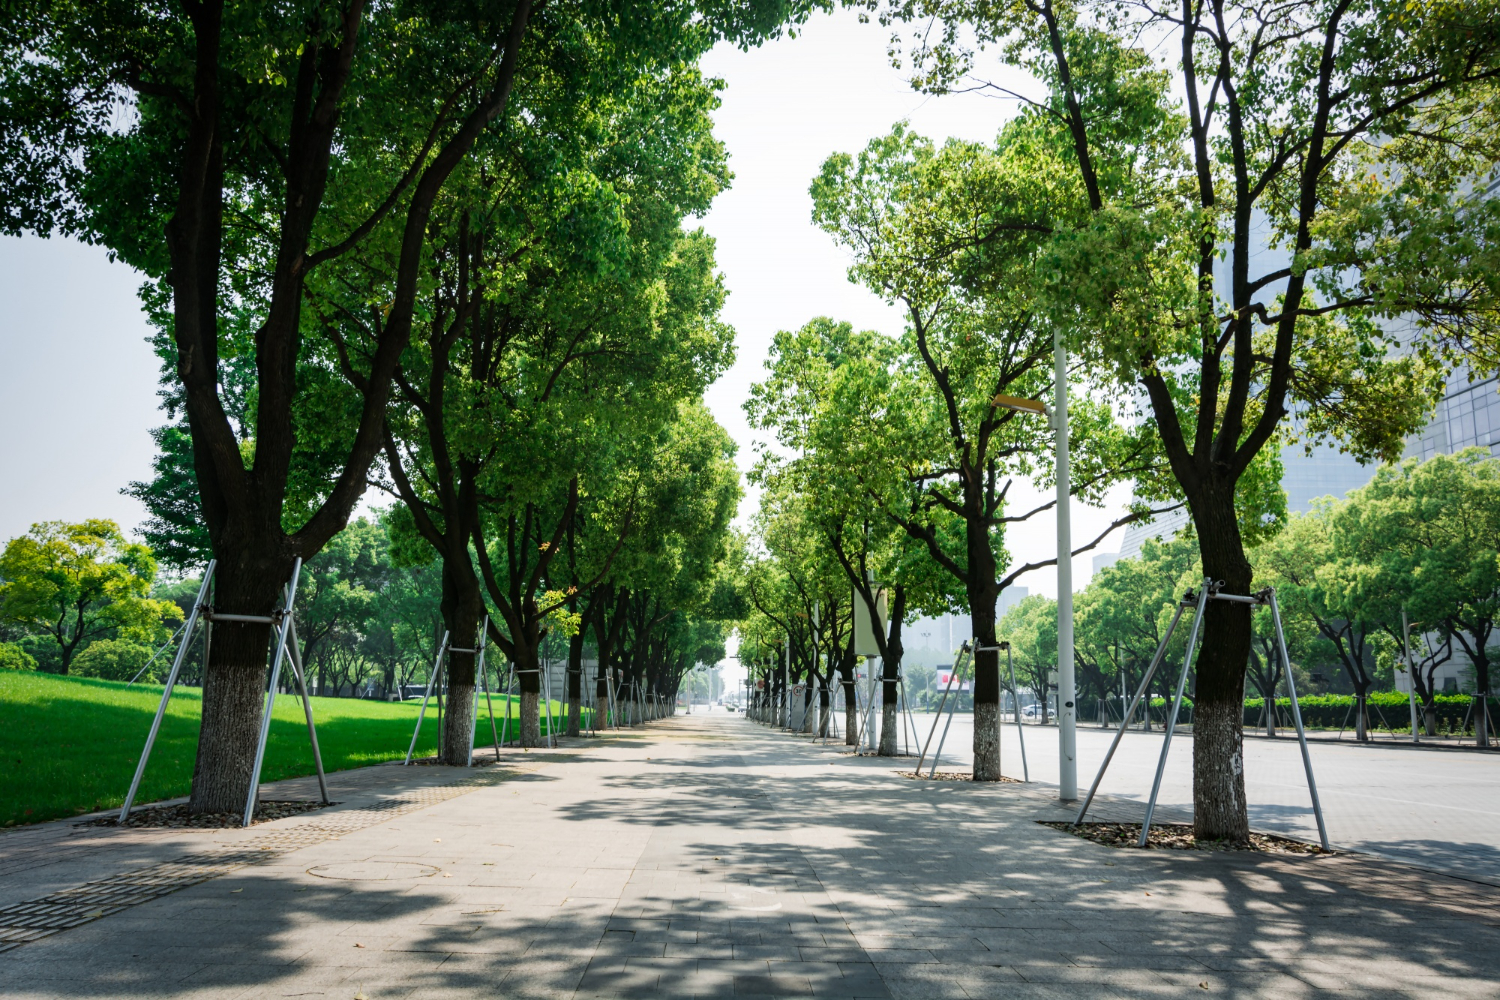 Przegrzane drzewa przyczyniają się do zanieczyszczenia powietrza w miastach